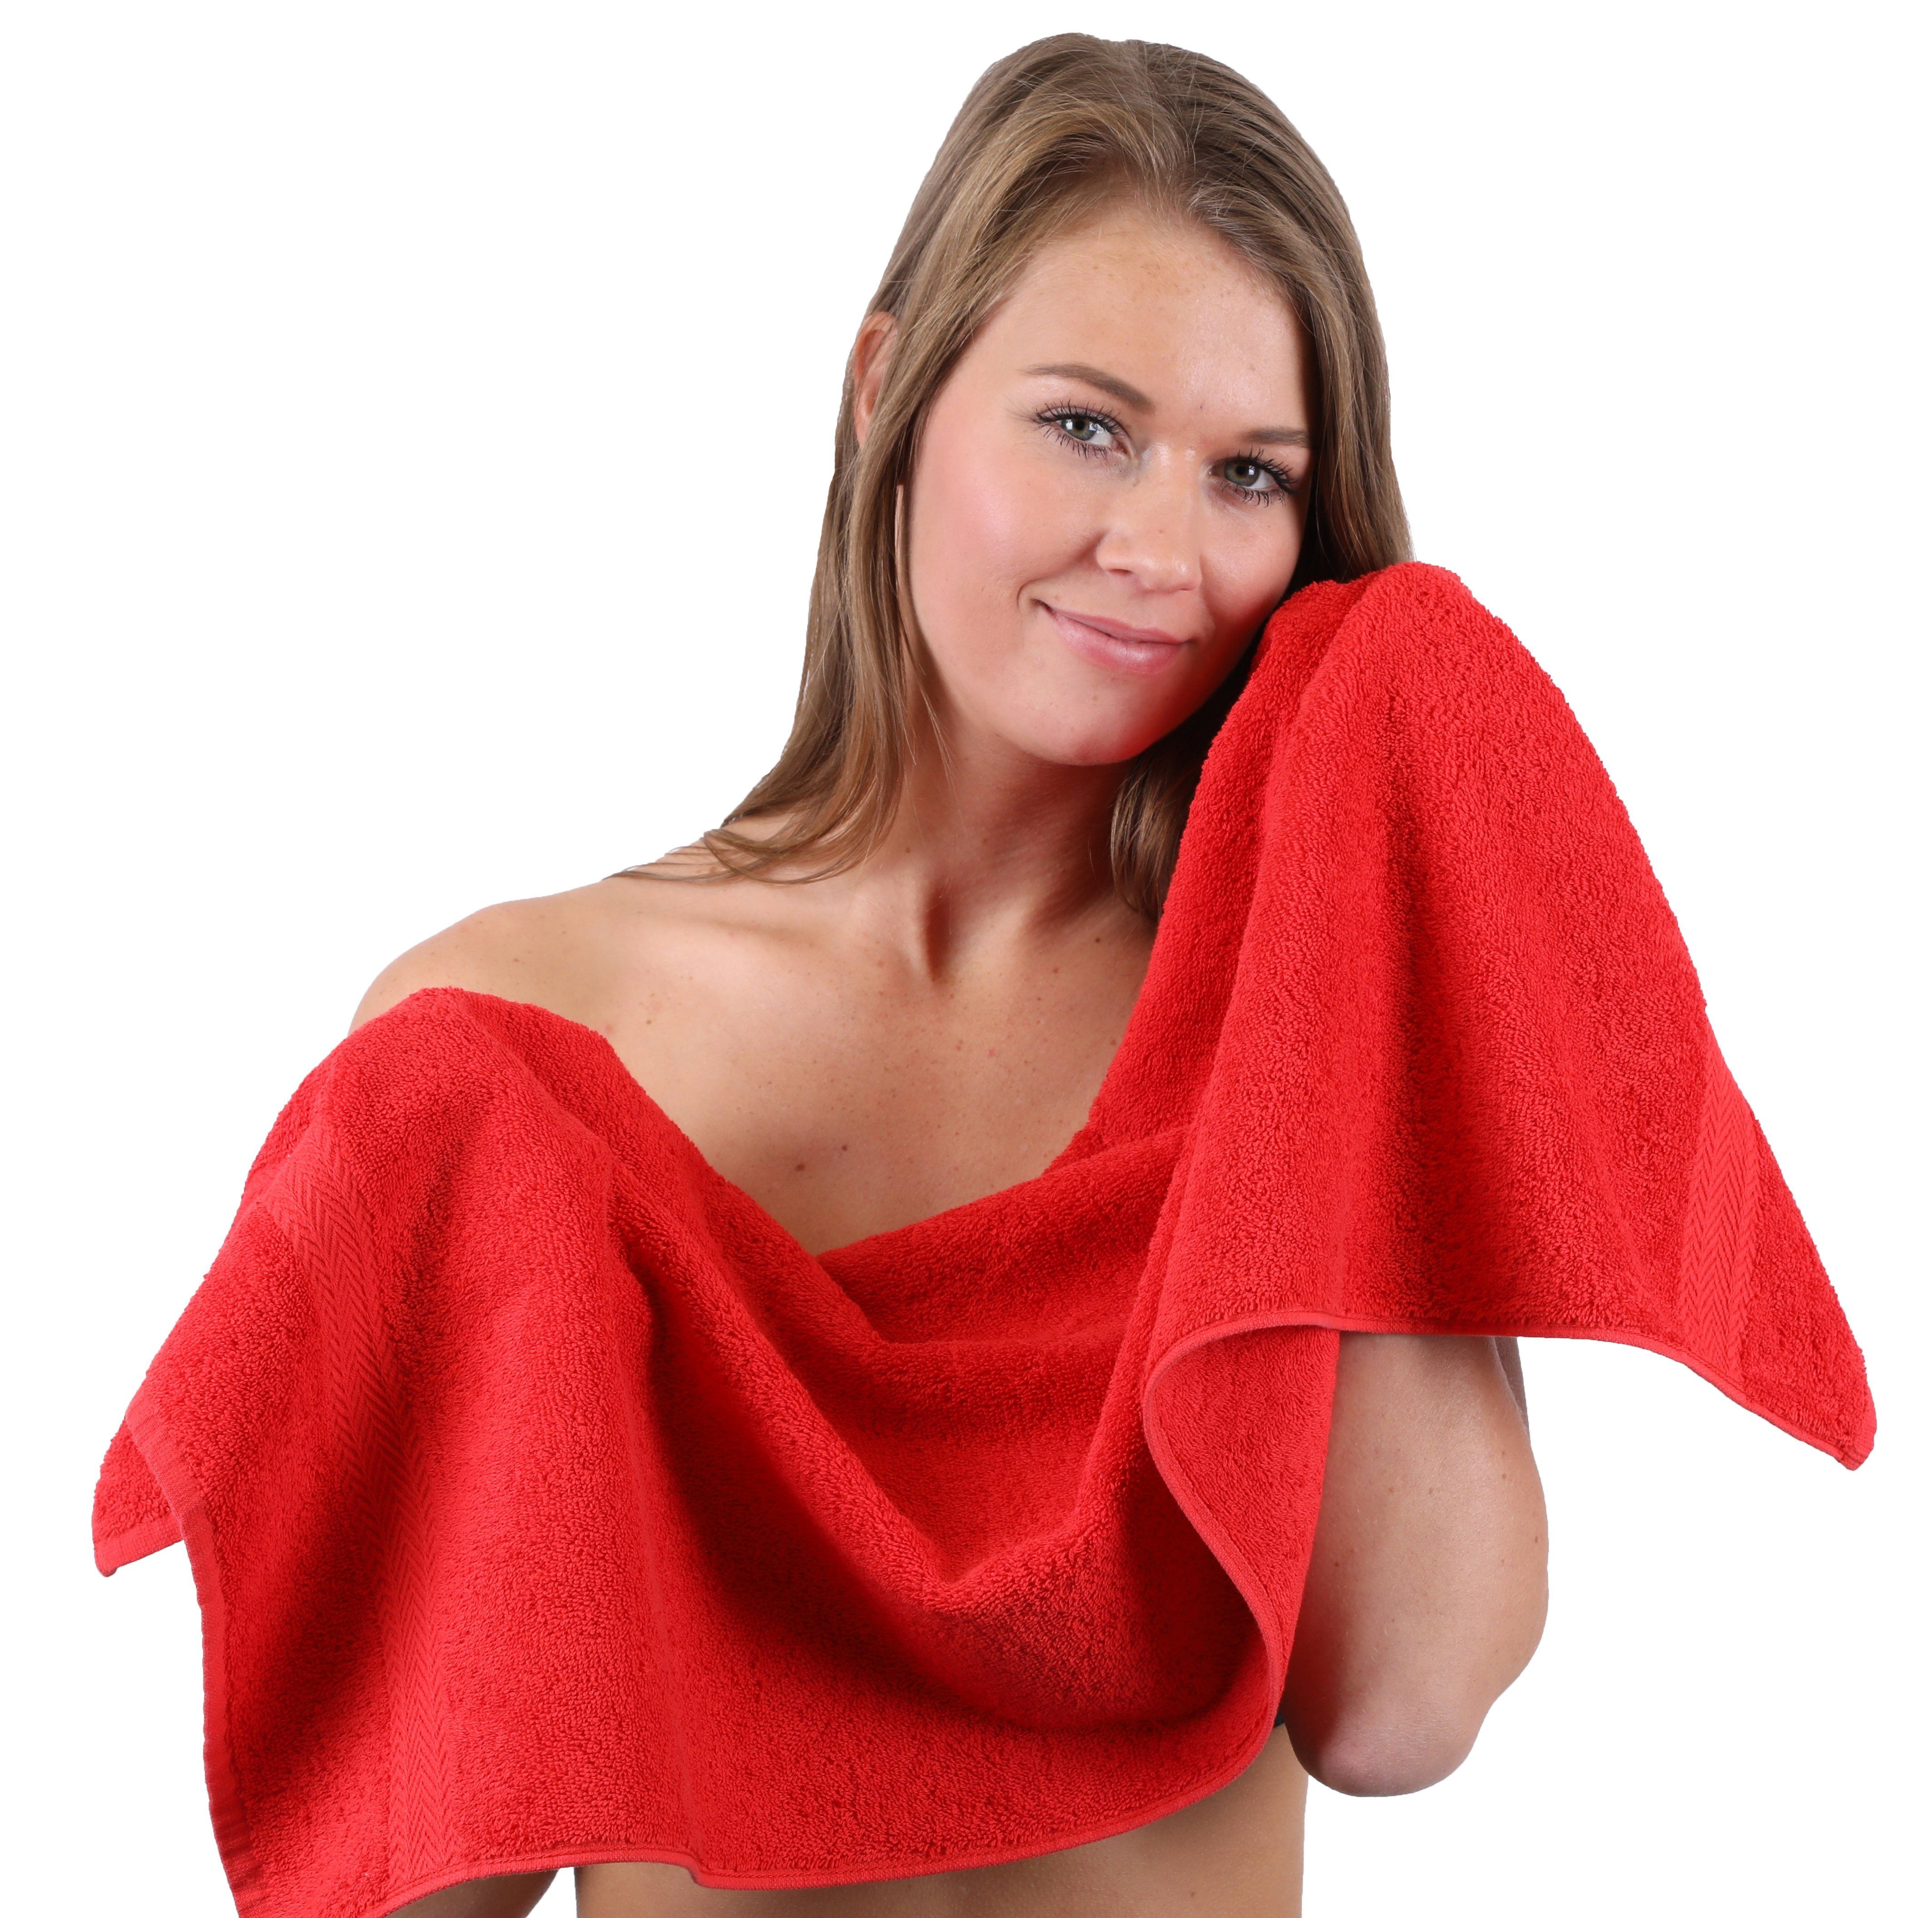 100% & Handtuch 10-TLG. Betz Farbe Gelb, Rot Handtuch-Set (10-tlg) Premium Baumwolle, Set